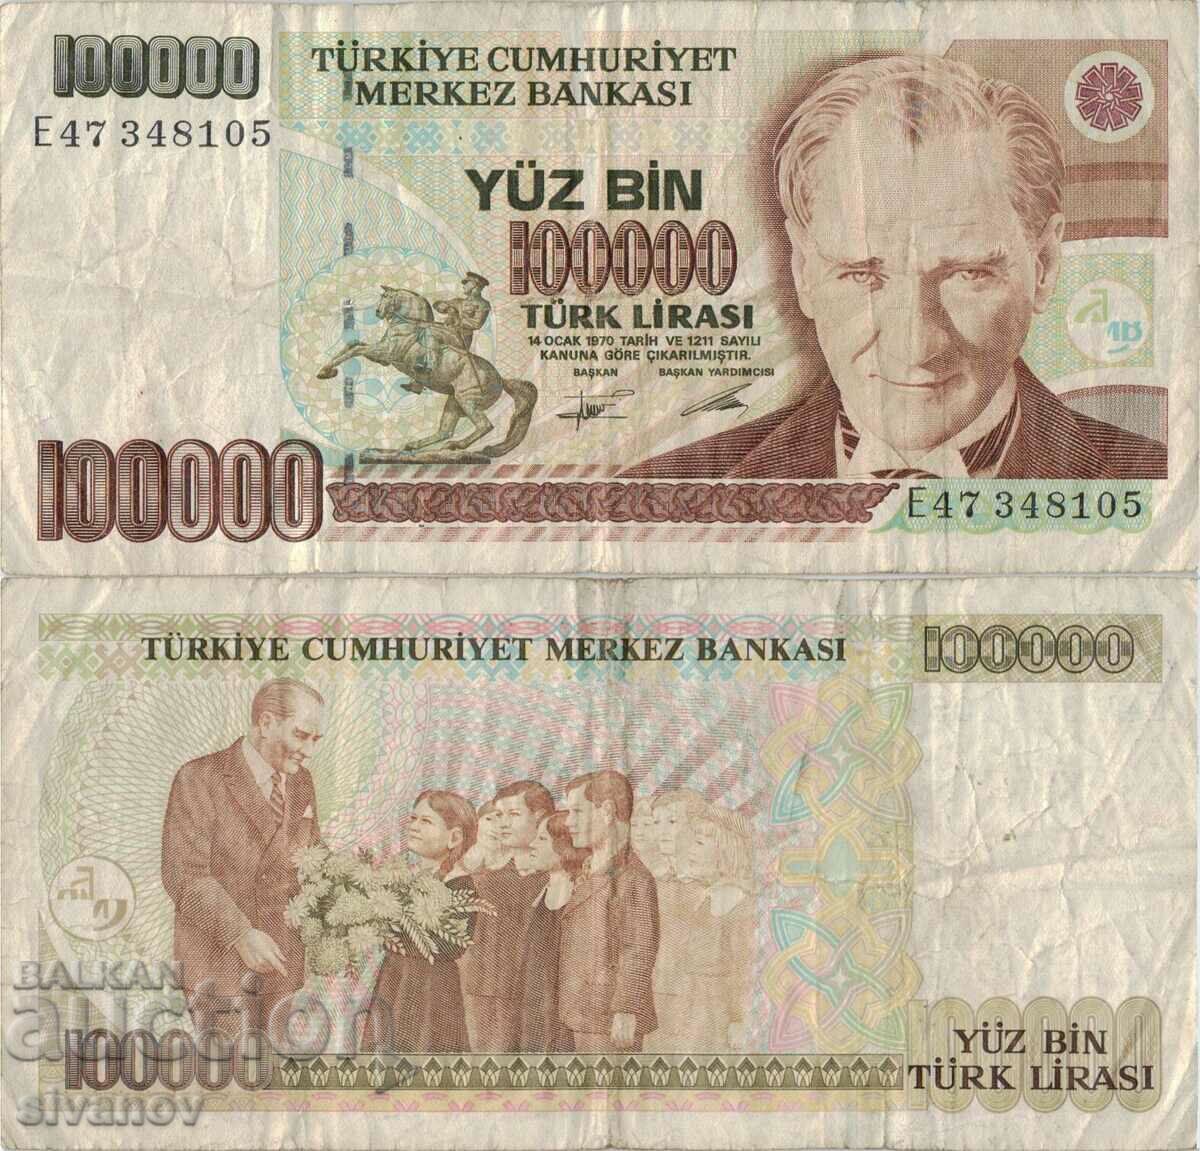 Turkey 100,000 lira 1970 (1991) year banknote #5191